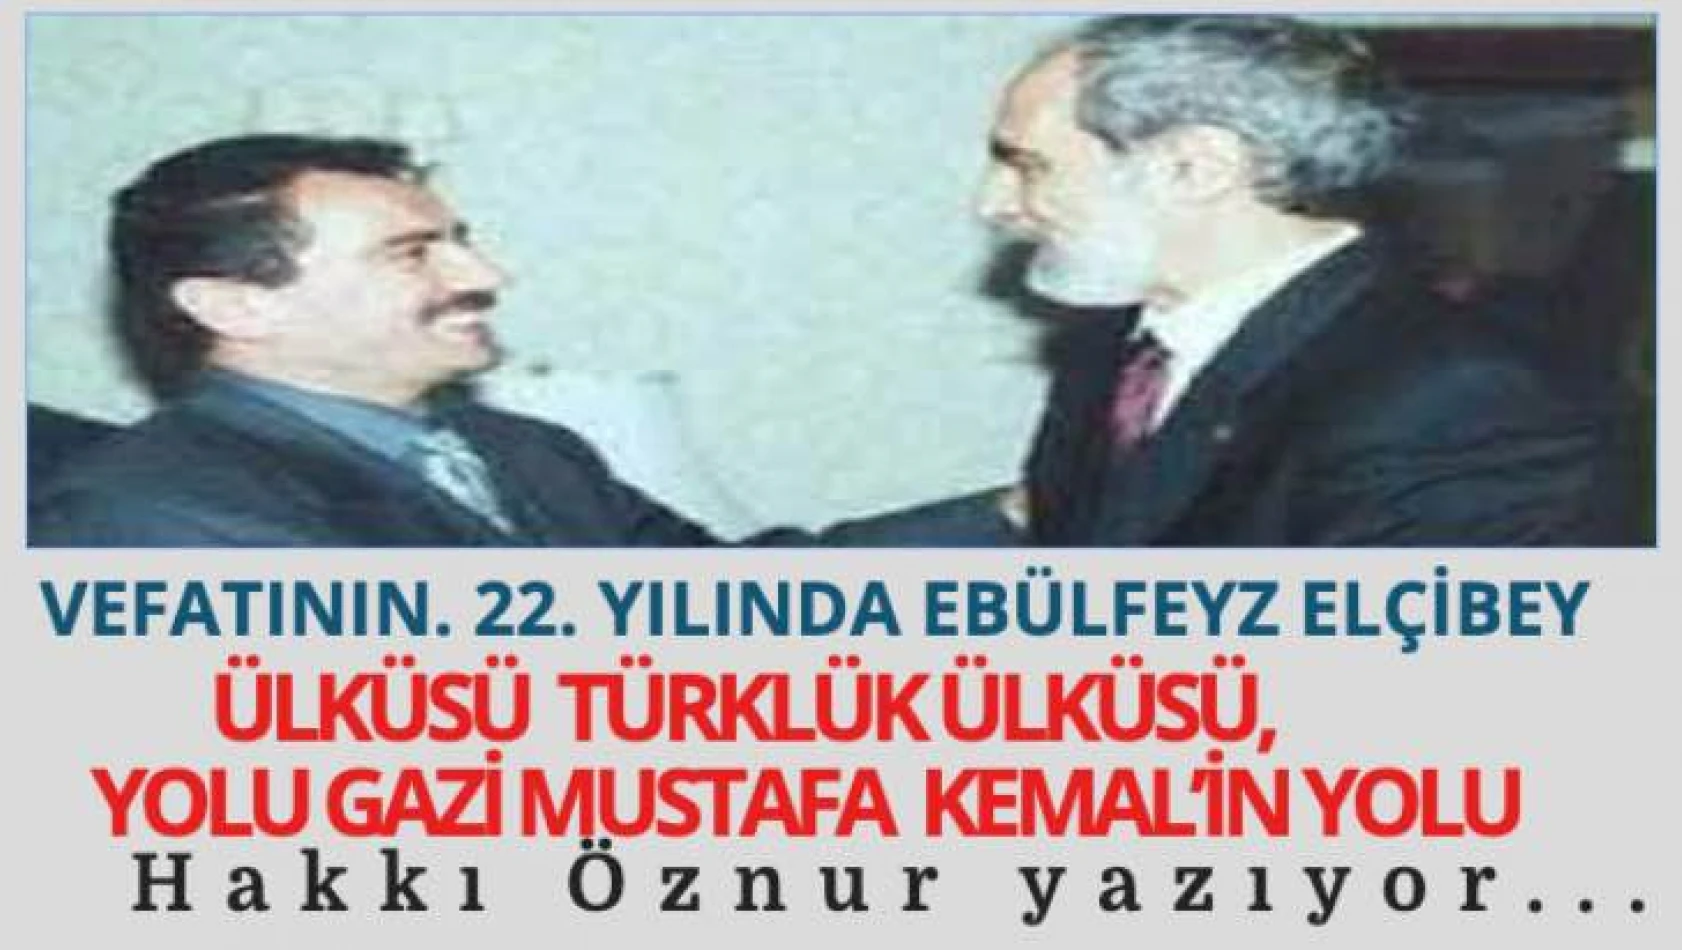 Hakkı Öznur, vefatının 22. yılında Ebülfeyz Elçibey'i yazdı: Ülküsü Türklük ülküsü, yolu Gazi Mustafa Kemal'in yolu